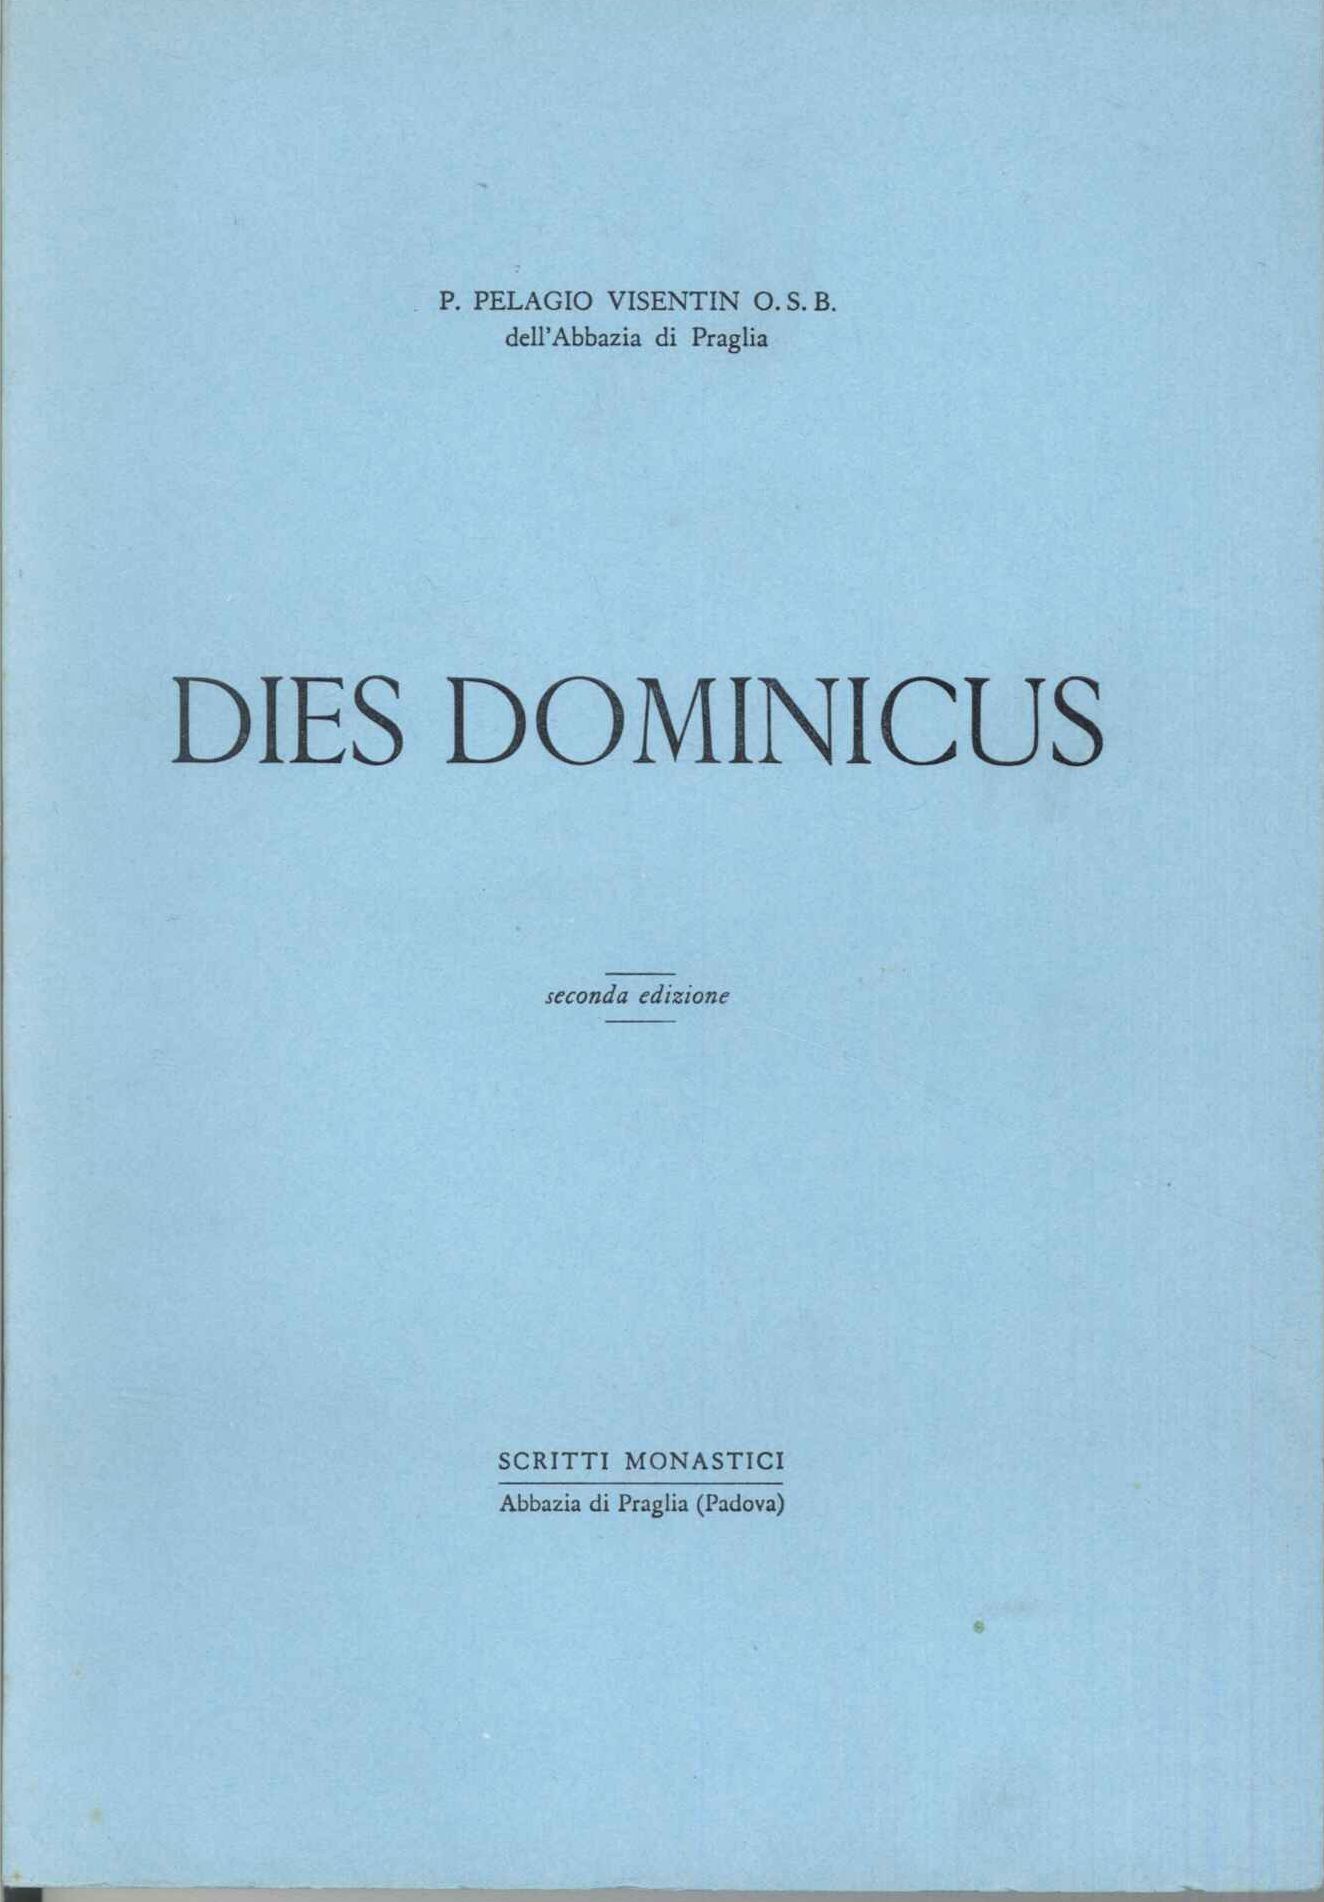 Dies Dominicus